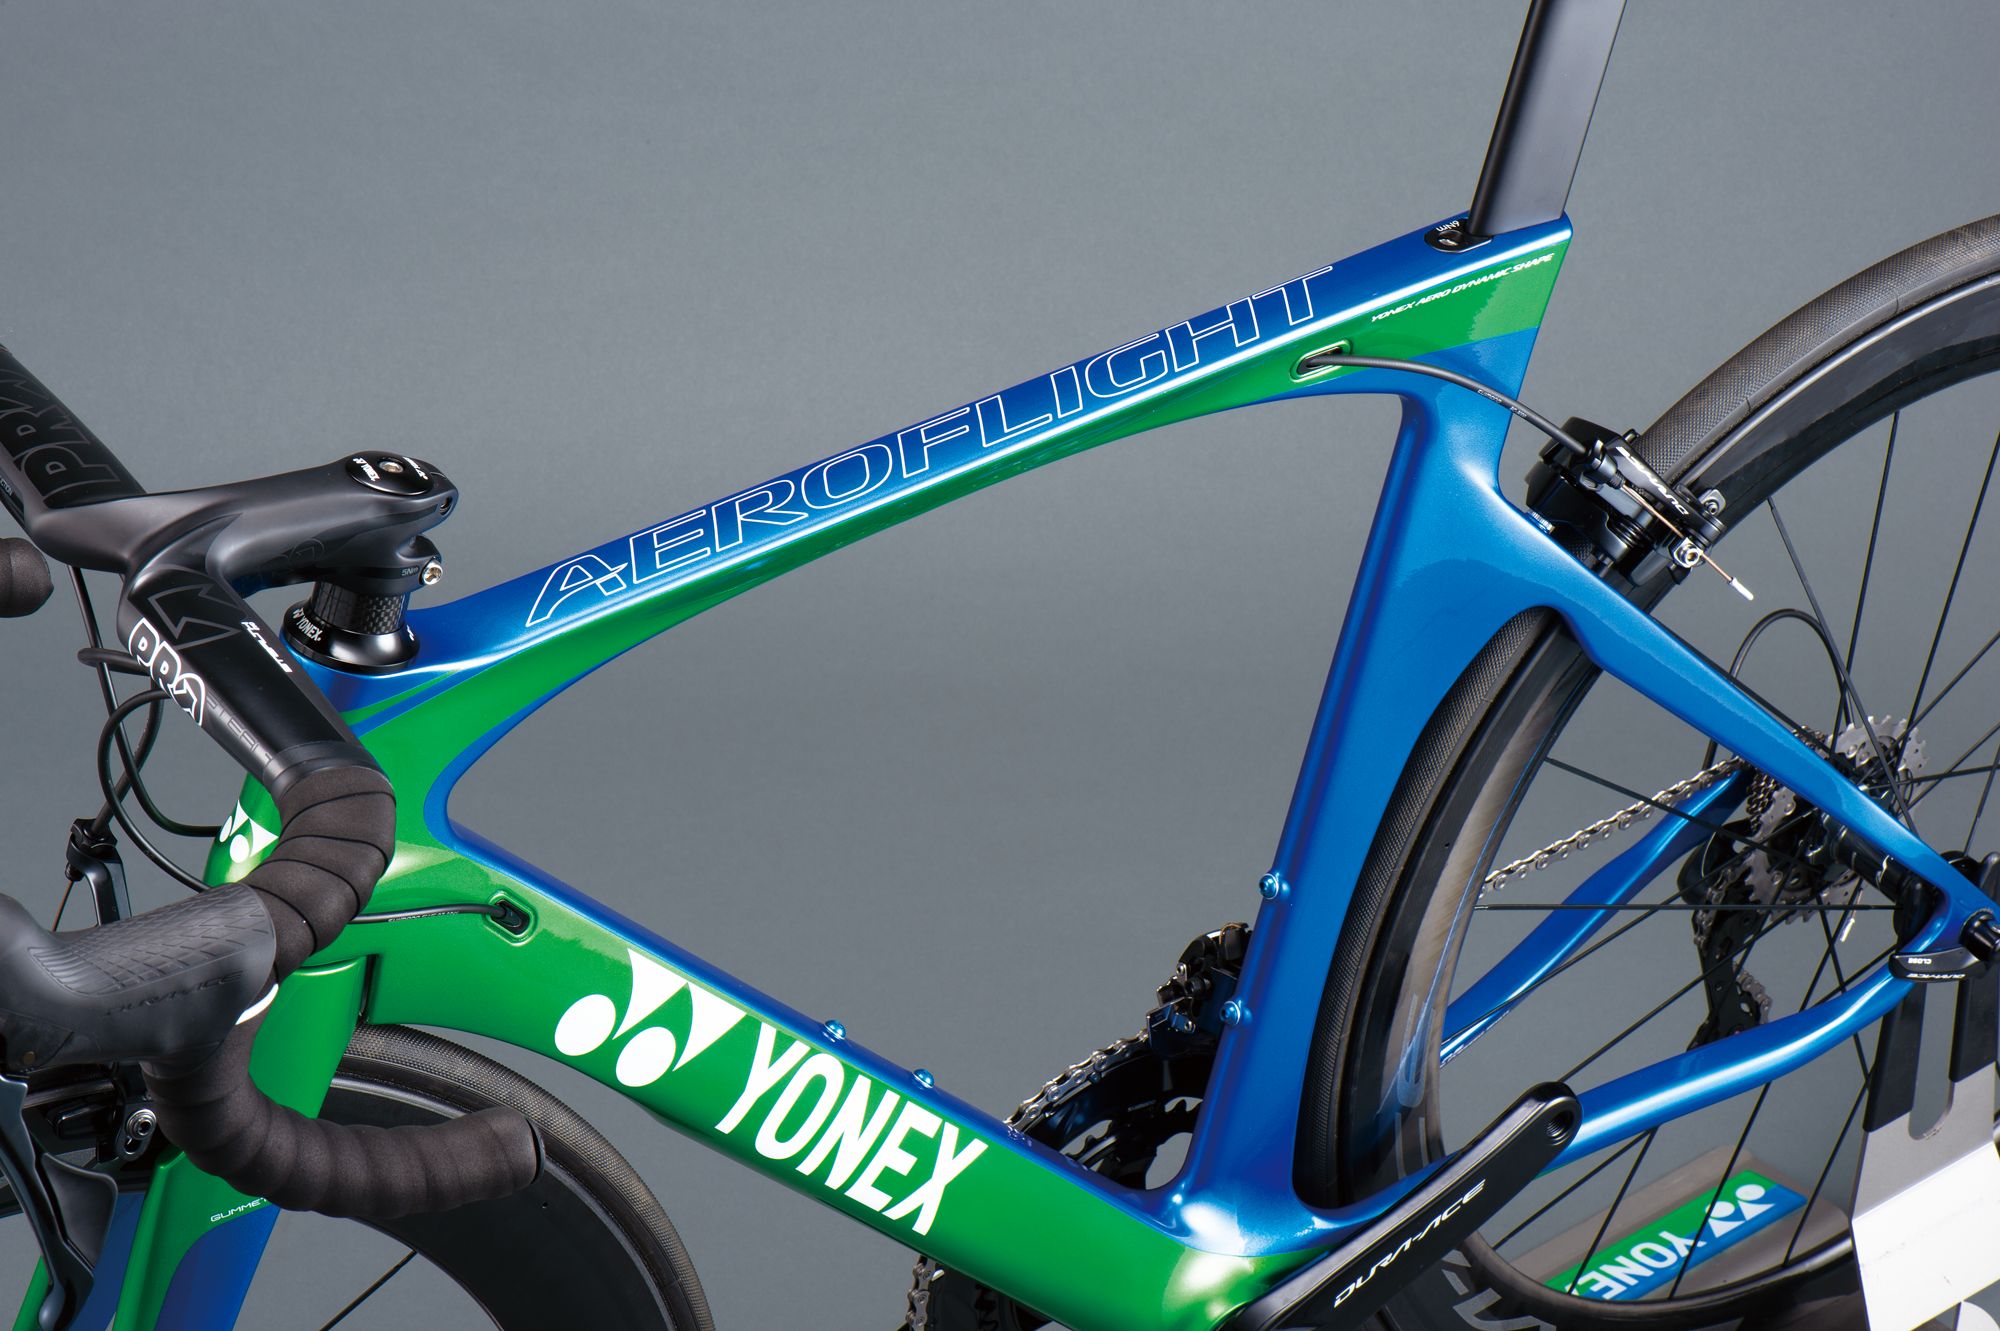 Yonex bicycle